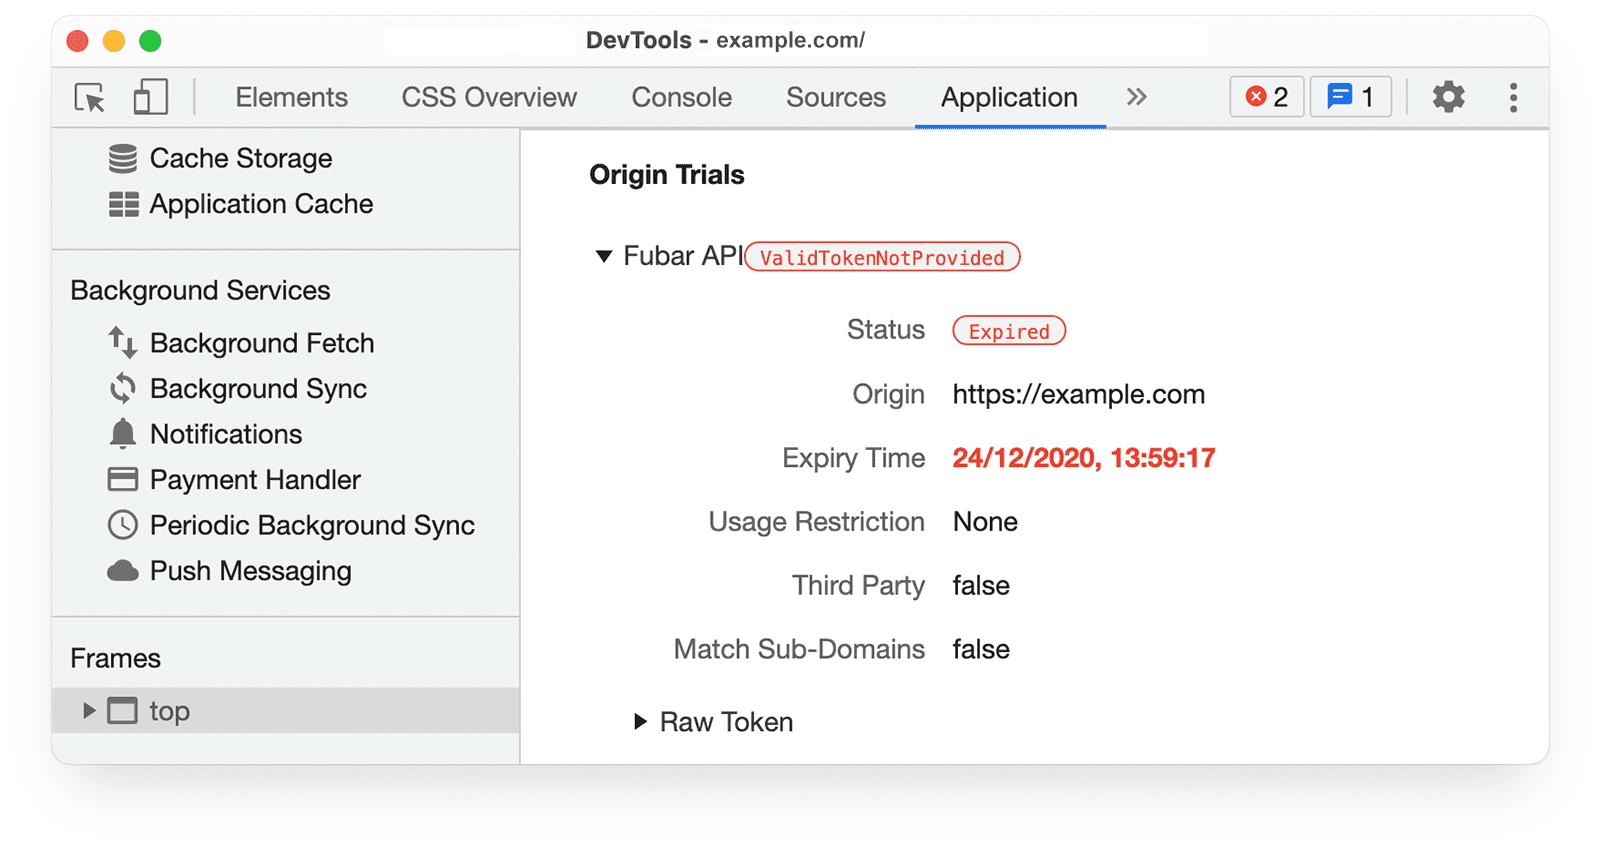 [Application] パネルに Chrome DevTools オリジン トライアルの情報。[Status: Success] がハイライト表示されている。